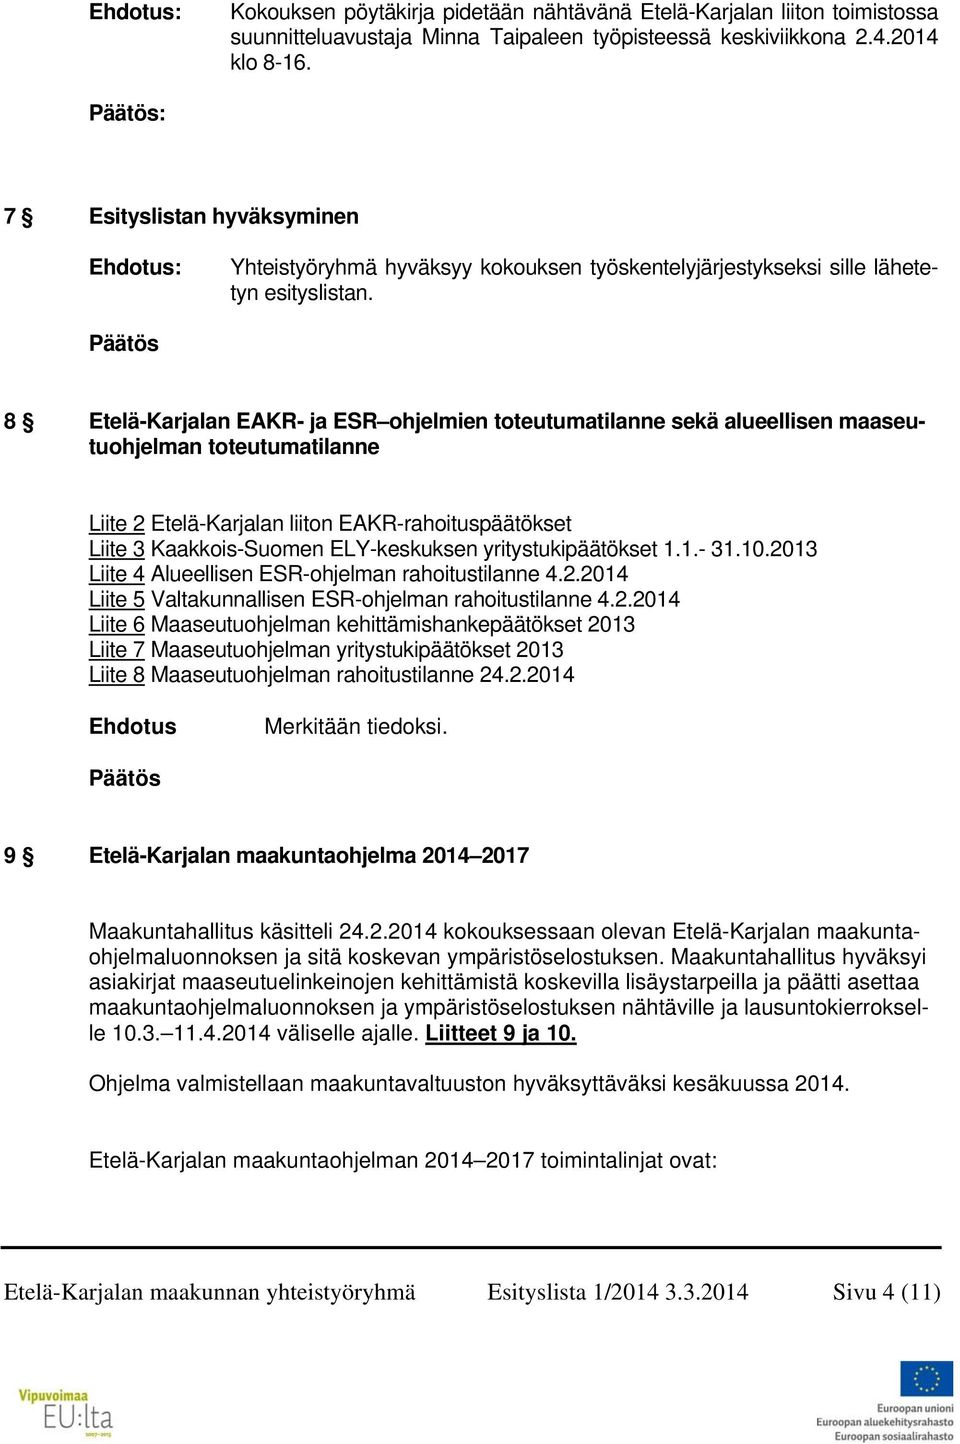 Päätös 8 Etelä-Karjalan EAKR- ja ESR ohjelmien toteutumatilanne sekä alueellisen maaseutuohjelman toteutumatilanne Liite 2 Etelä-Karjalan liiton EAKR-rahoituspäätökset Liite 3 Kaakkois-Suomen